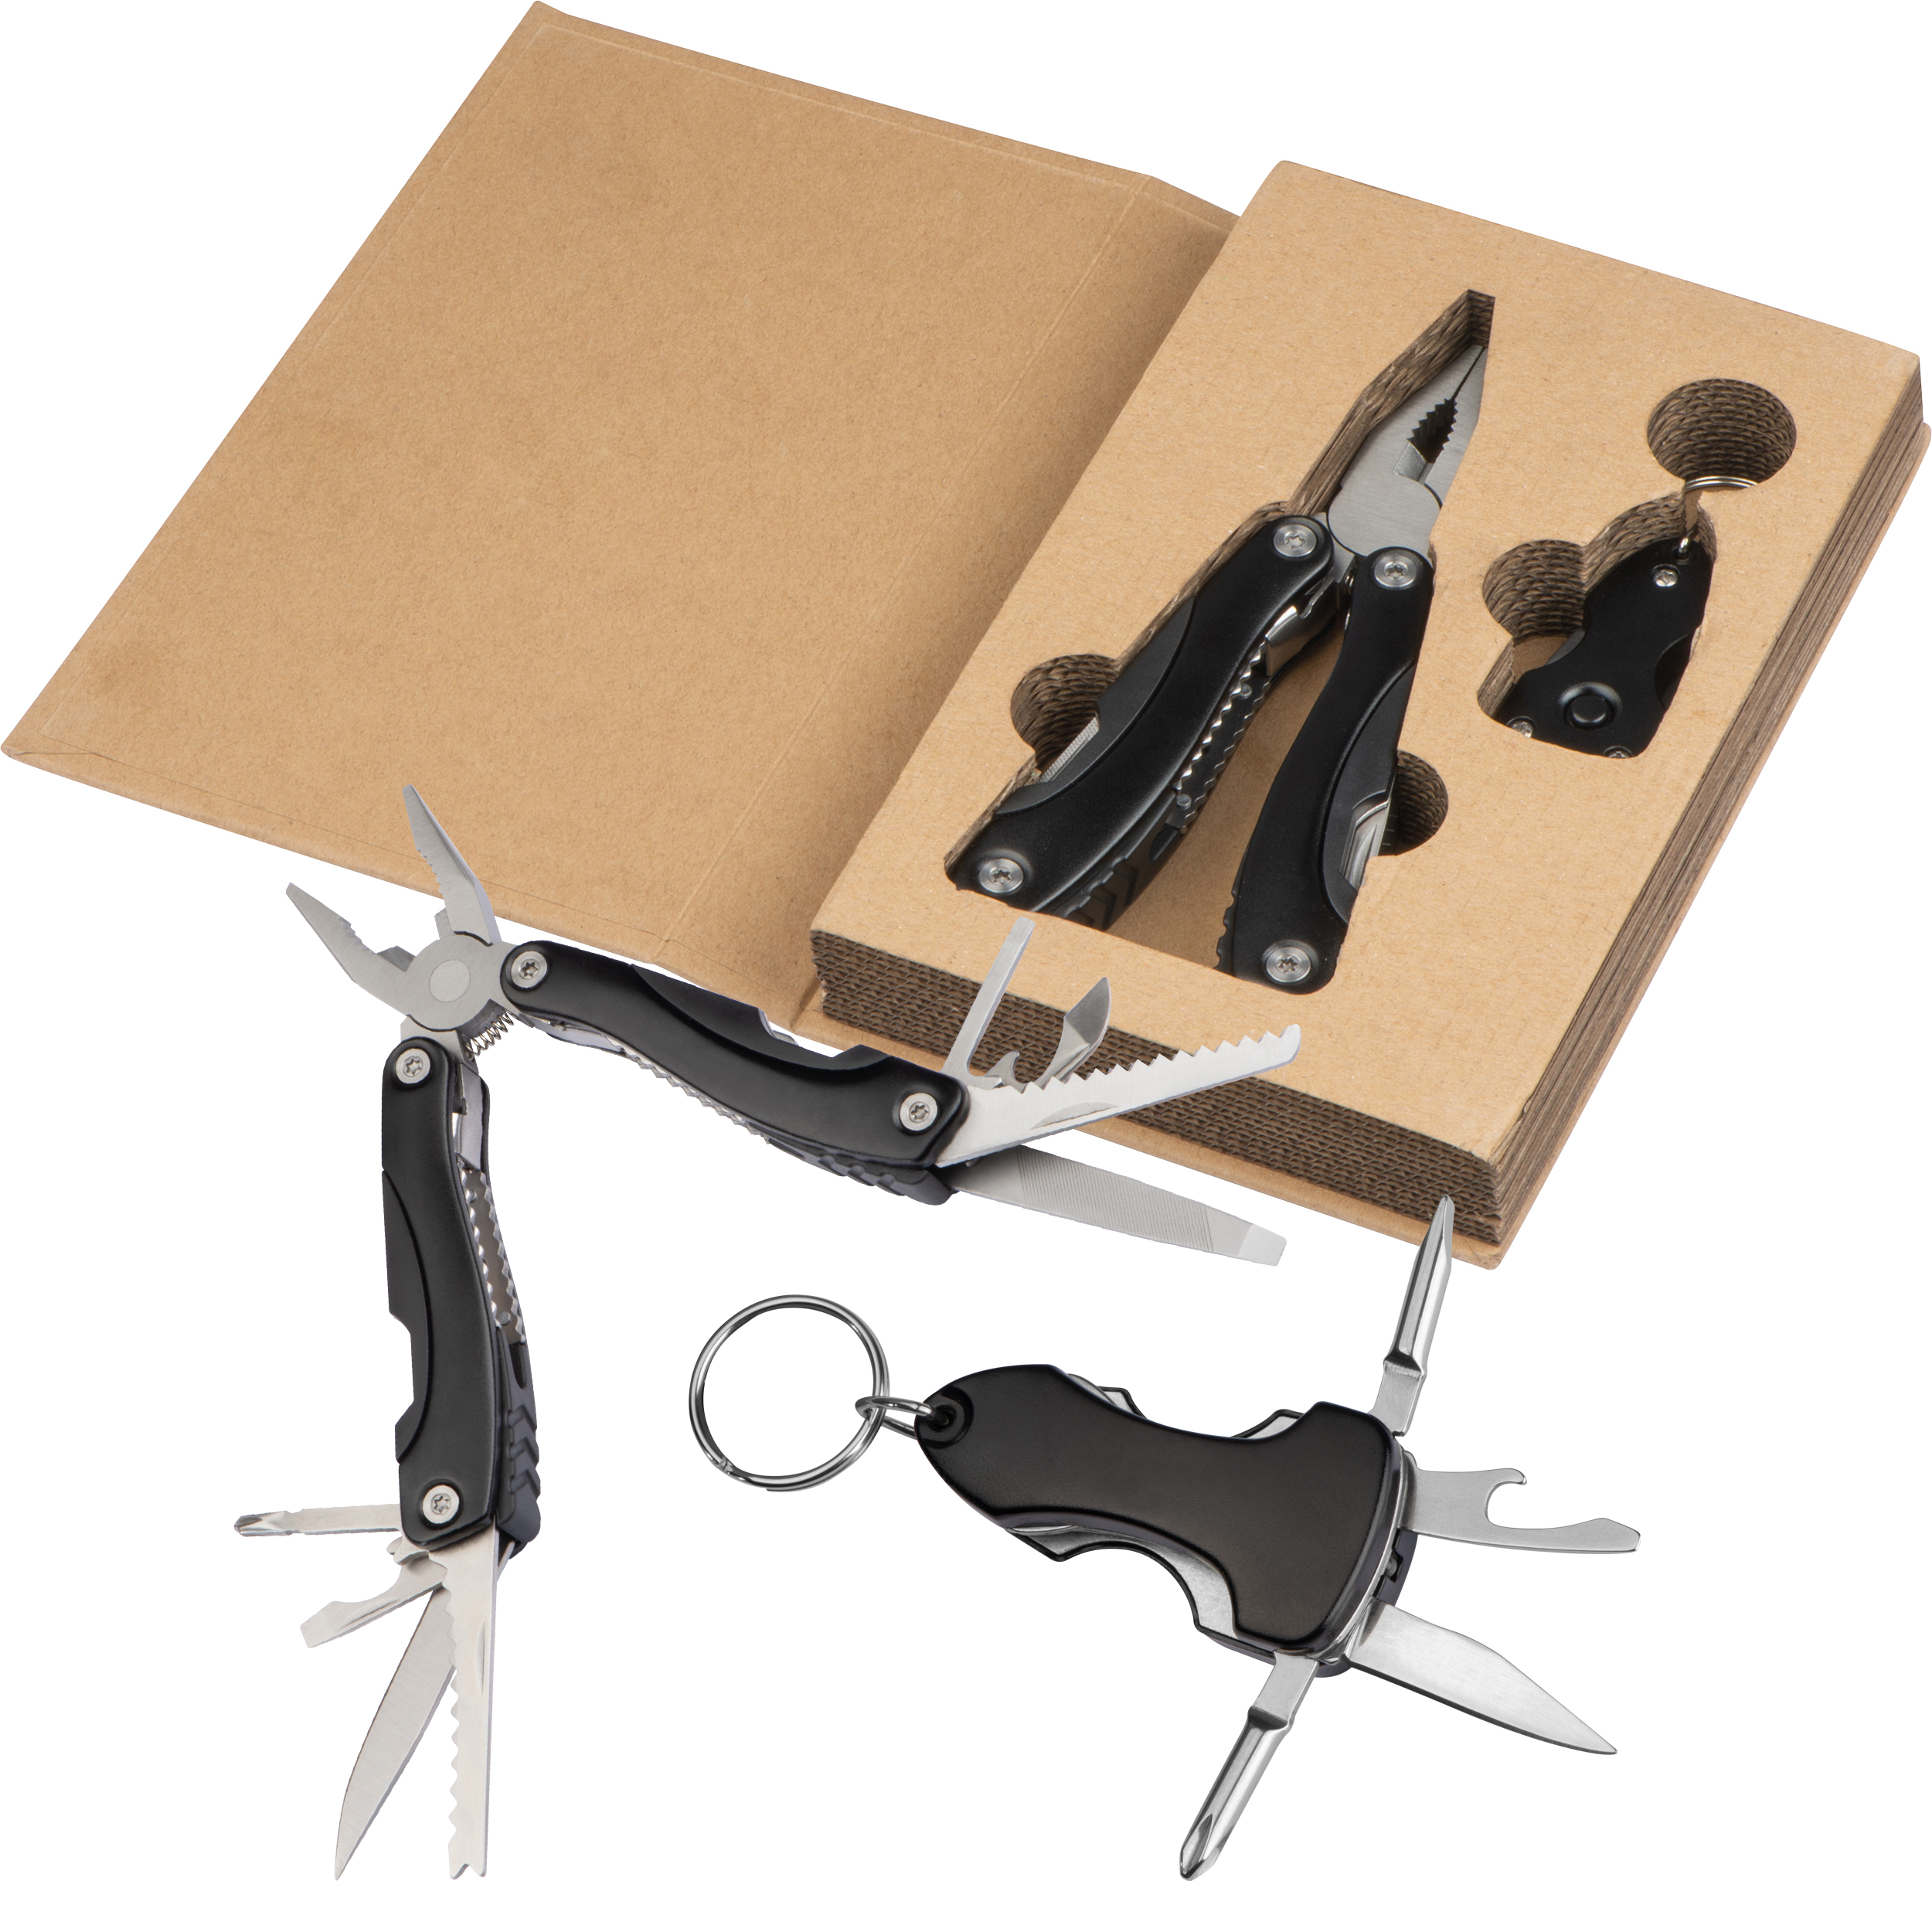 Ensemble d'outils dans une boîte en carton